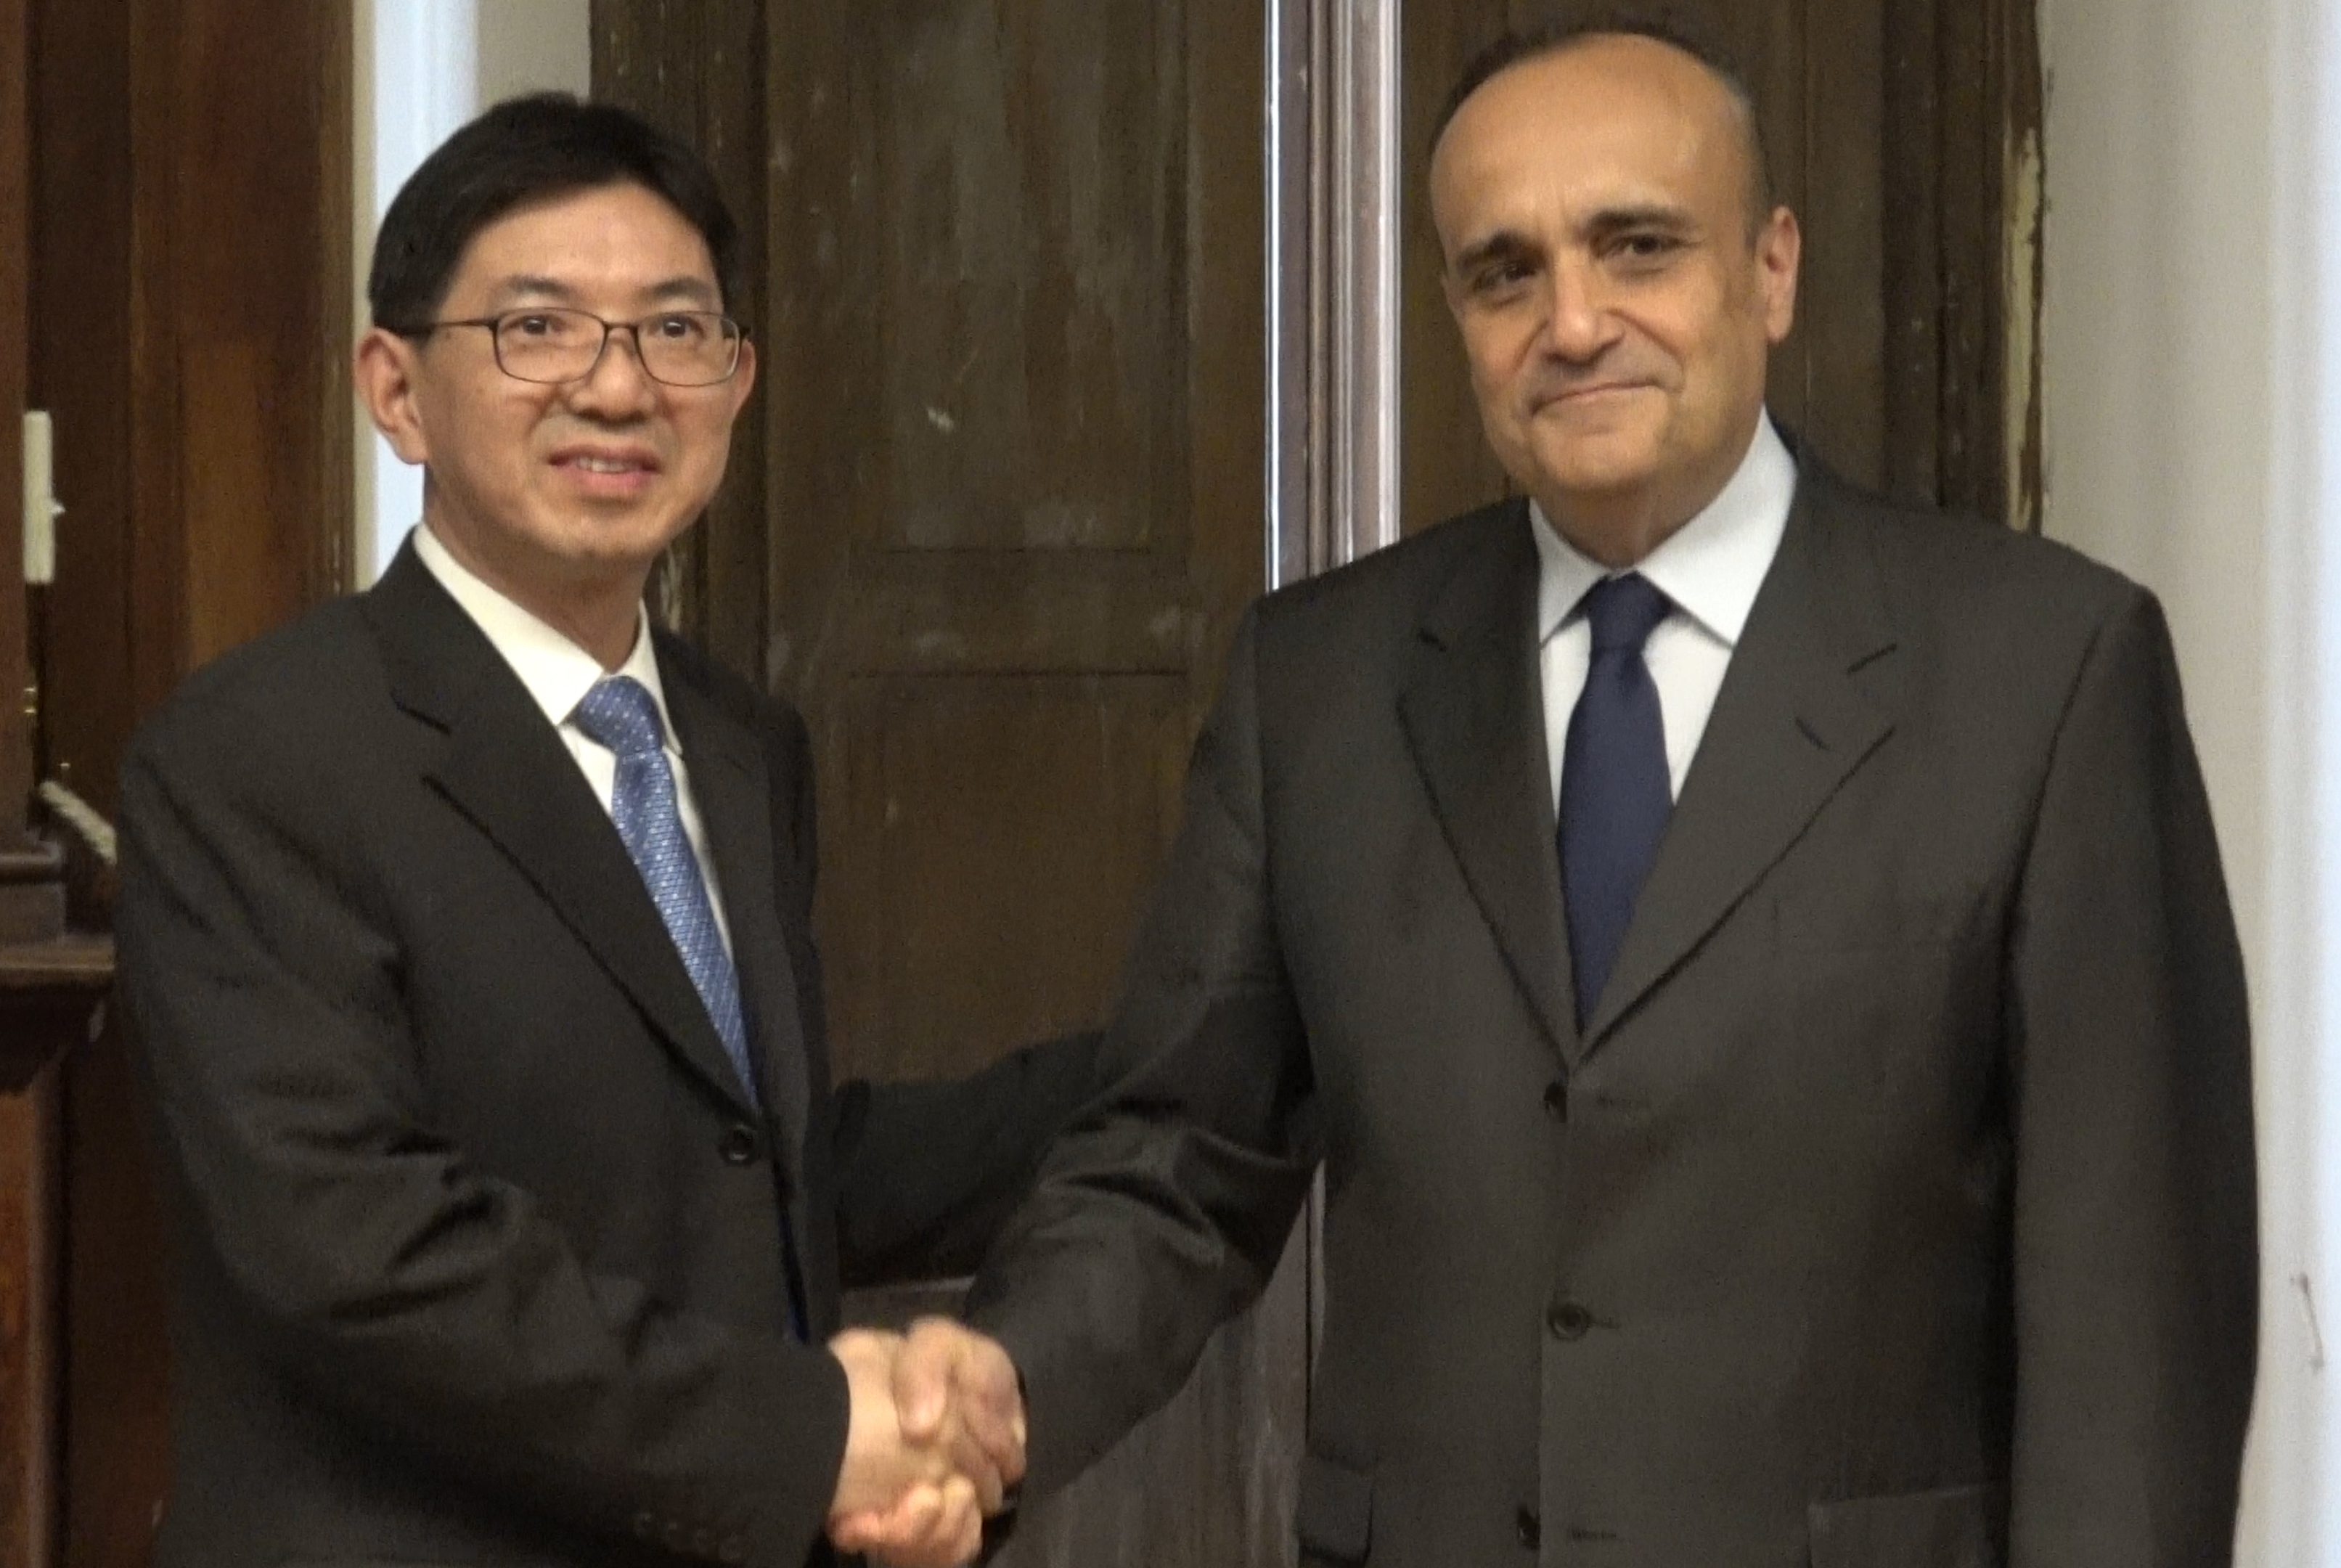 Accordo DG Turismo China Economic Daily Cento giorni da Ministro. Alberto Bonisoli e i primi tre mesi ai Beni Culturali